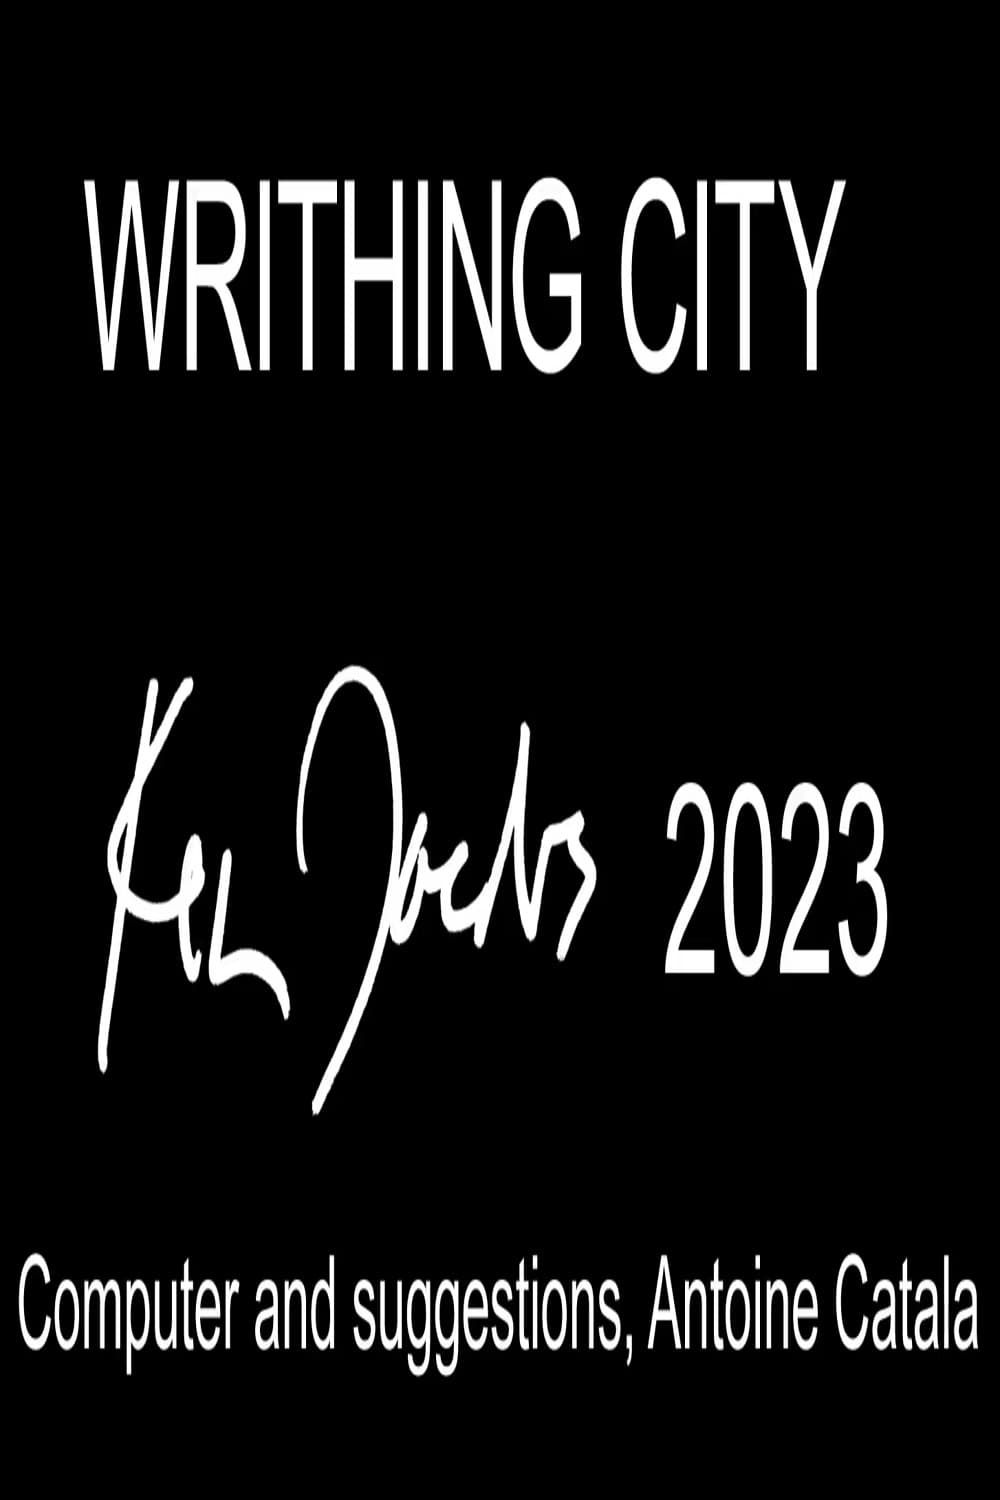 Writhing City